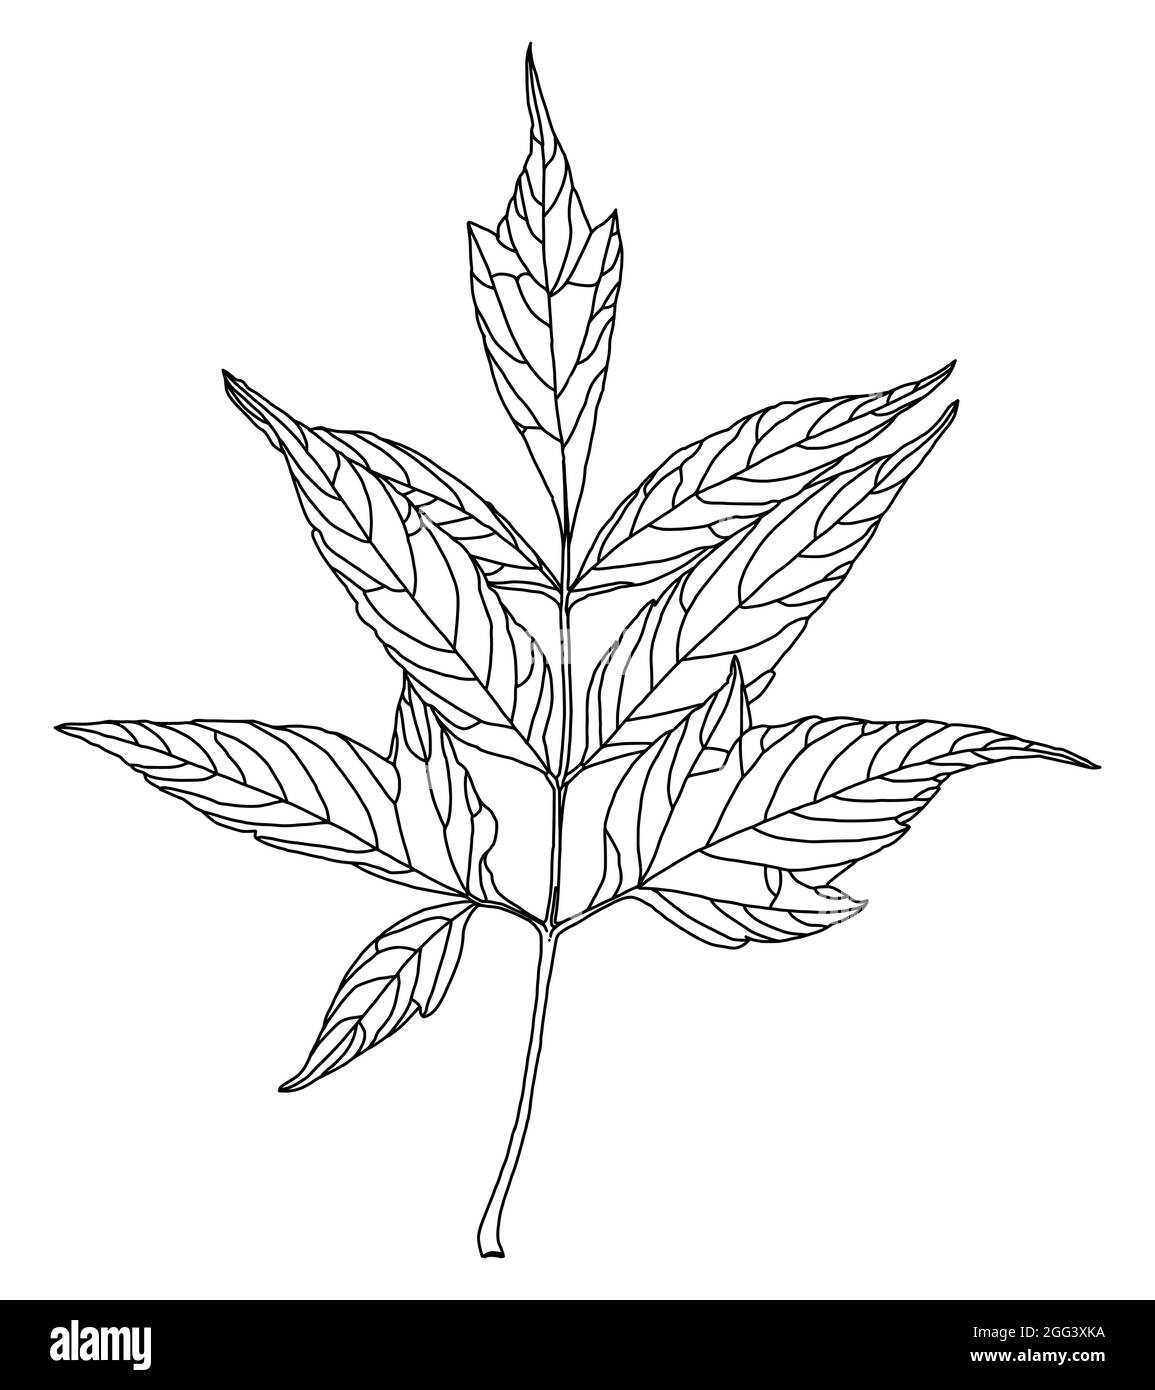 Graphiques linéaires noirs de feuilles d'érable à feuilles de frêne isolées sur fond blanc. Illustration vectorielle. Élément pour le design dans le style des dessins au trait. Illustration de Vecteur